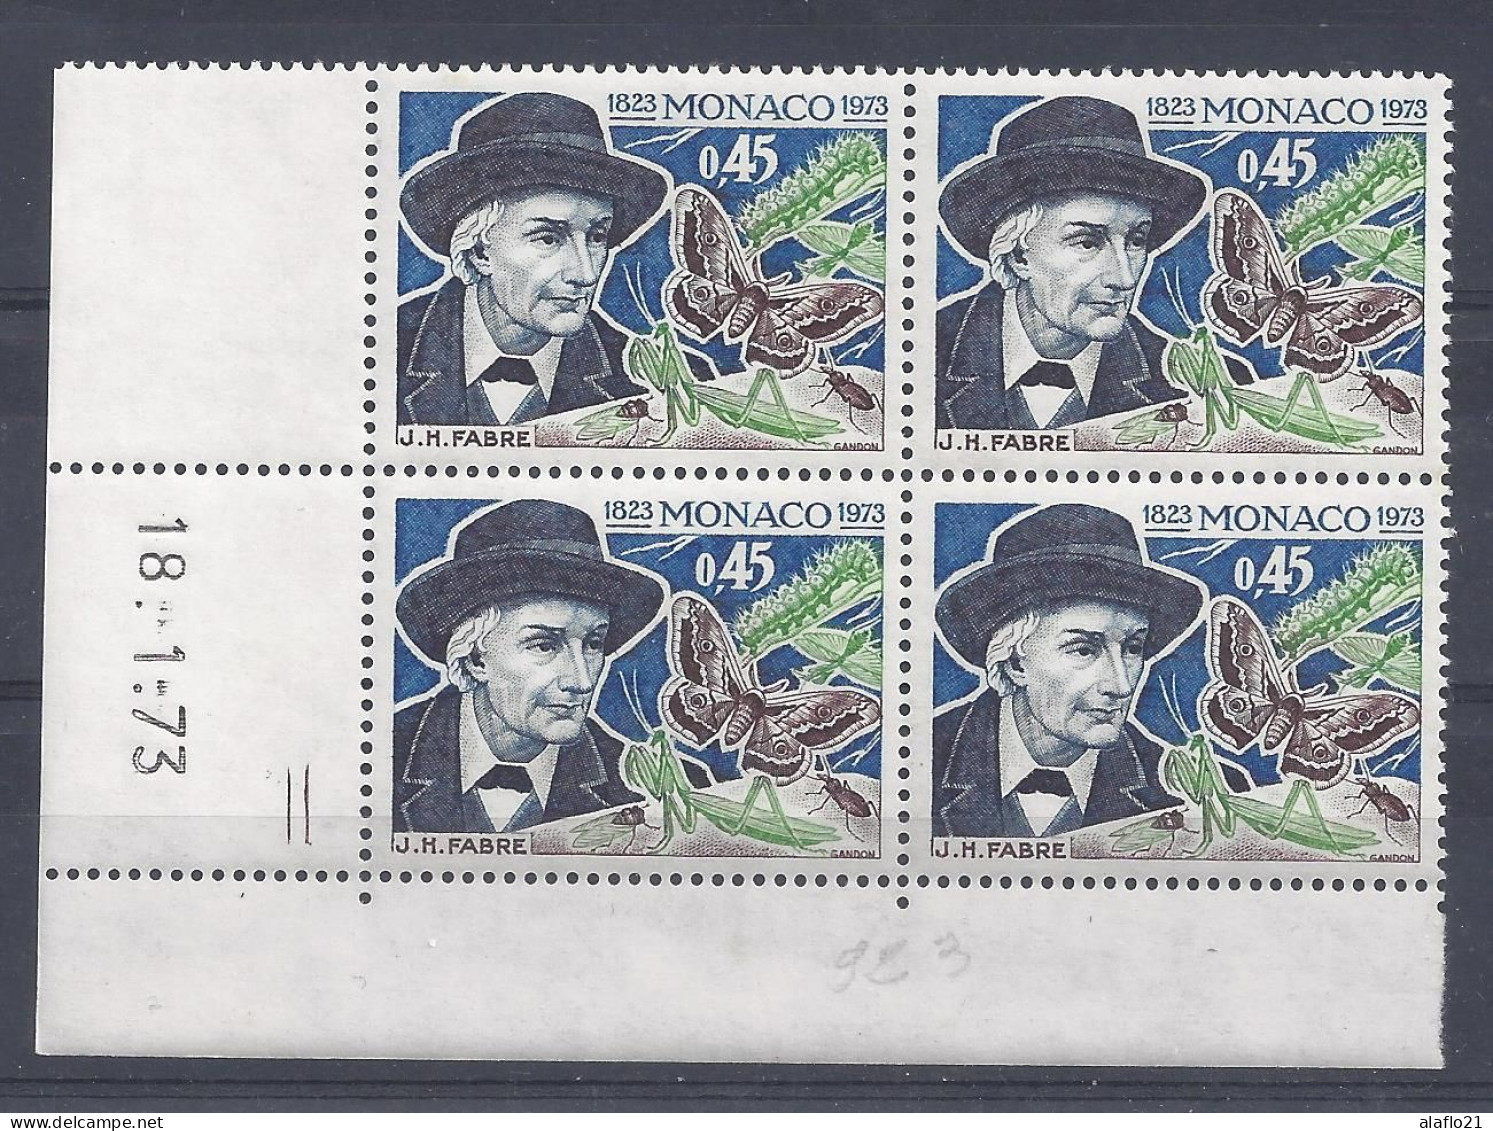 MONACO N° 923 - J. H. FABRE - BLOC De 4 COIN DATE - NEUF SANS CHARNIERE - 18/1/73 - 2 Traits - Unused Stamps